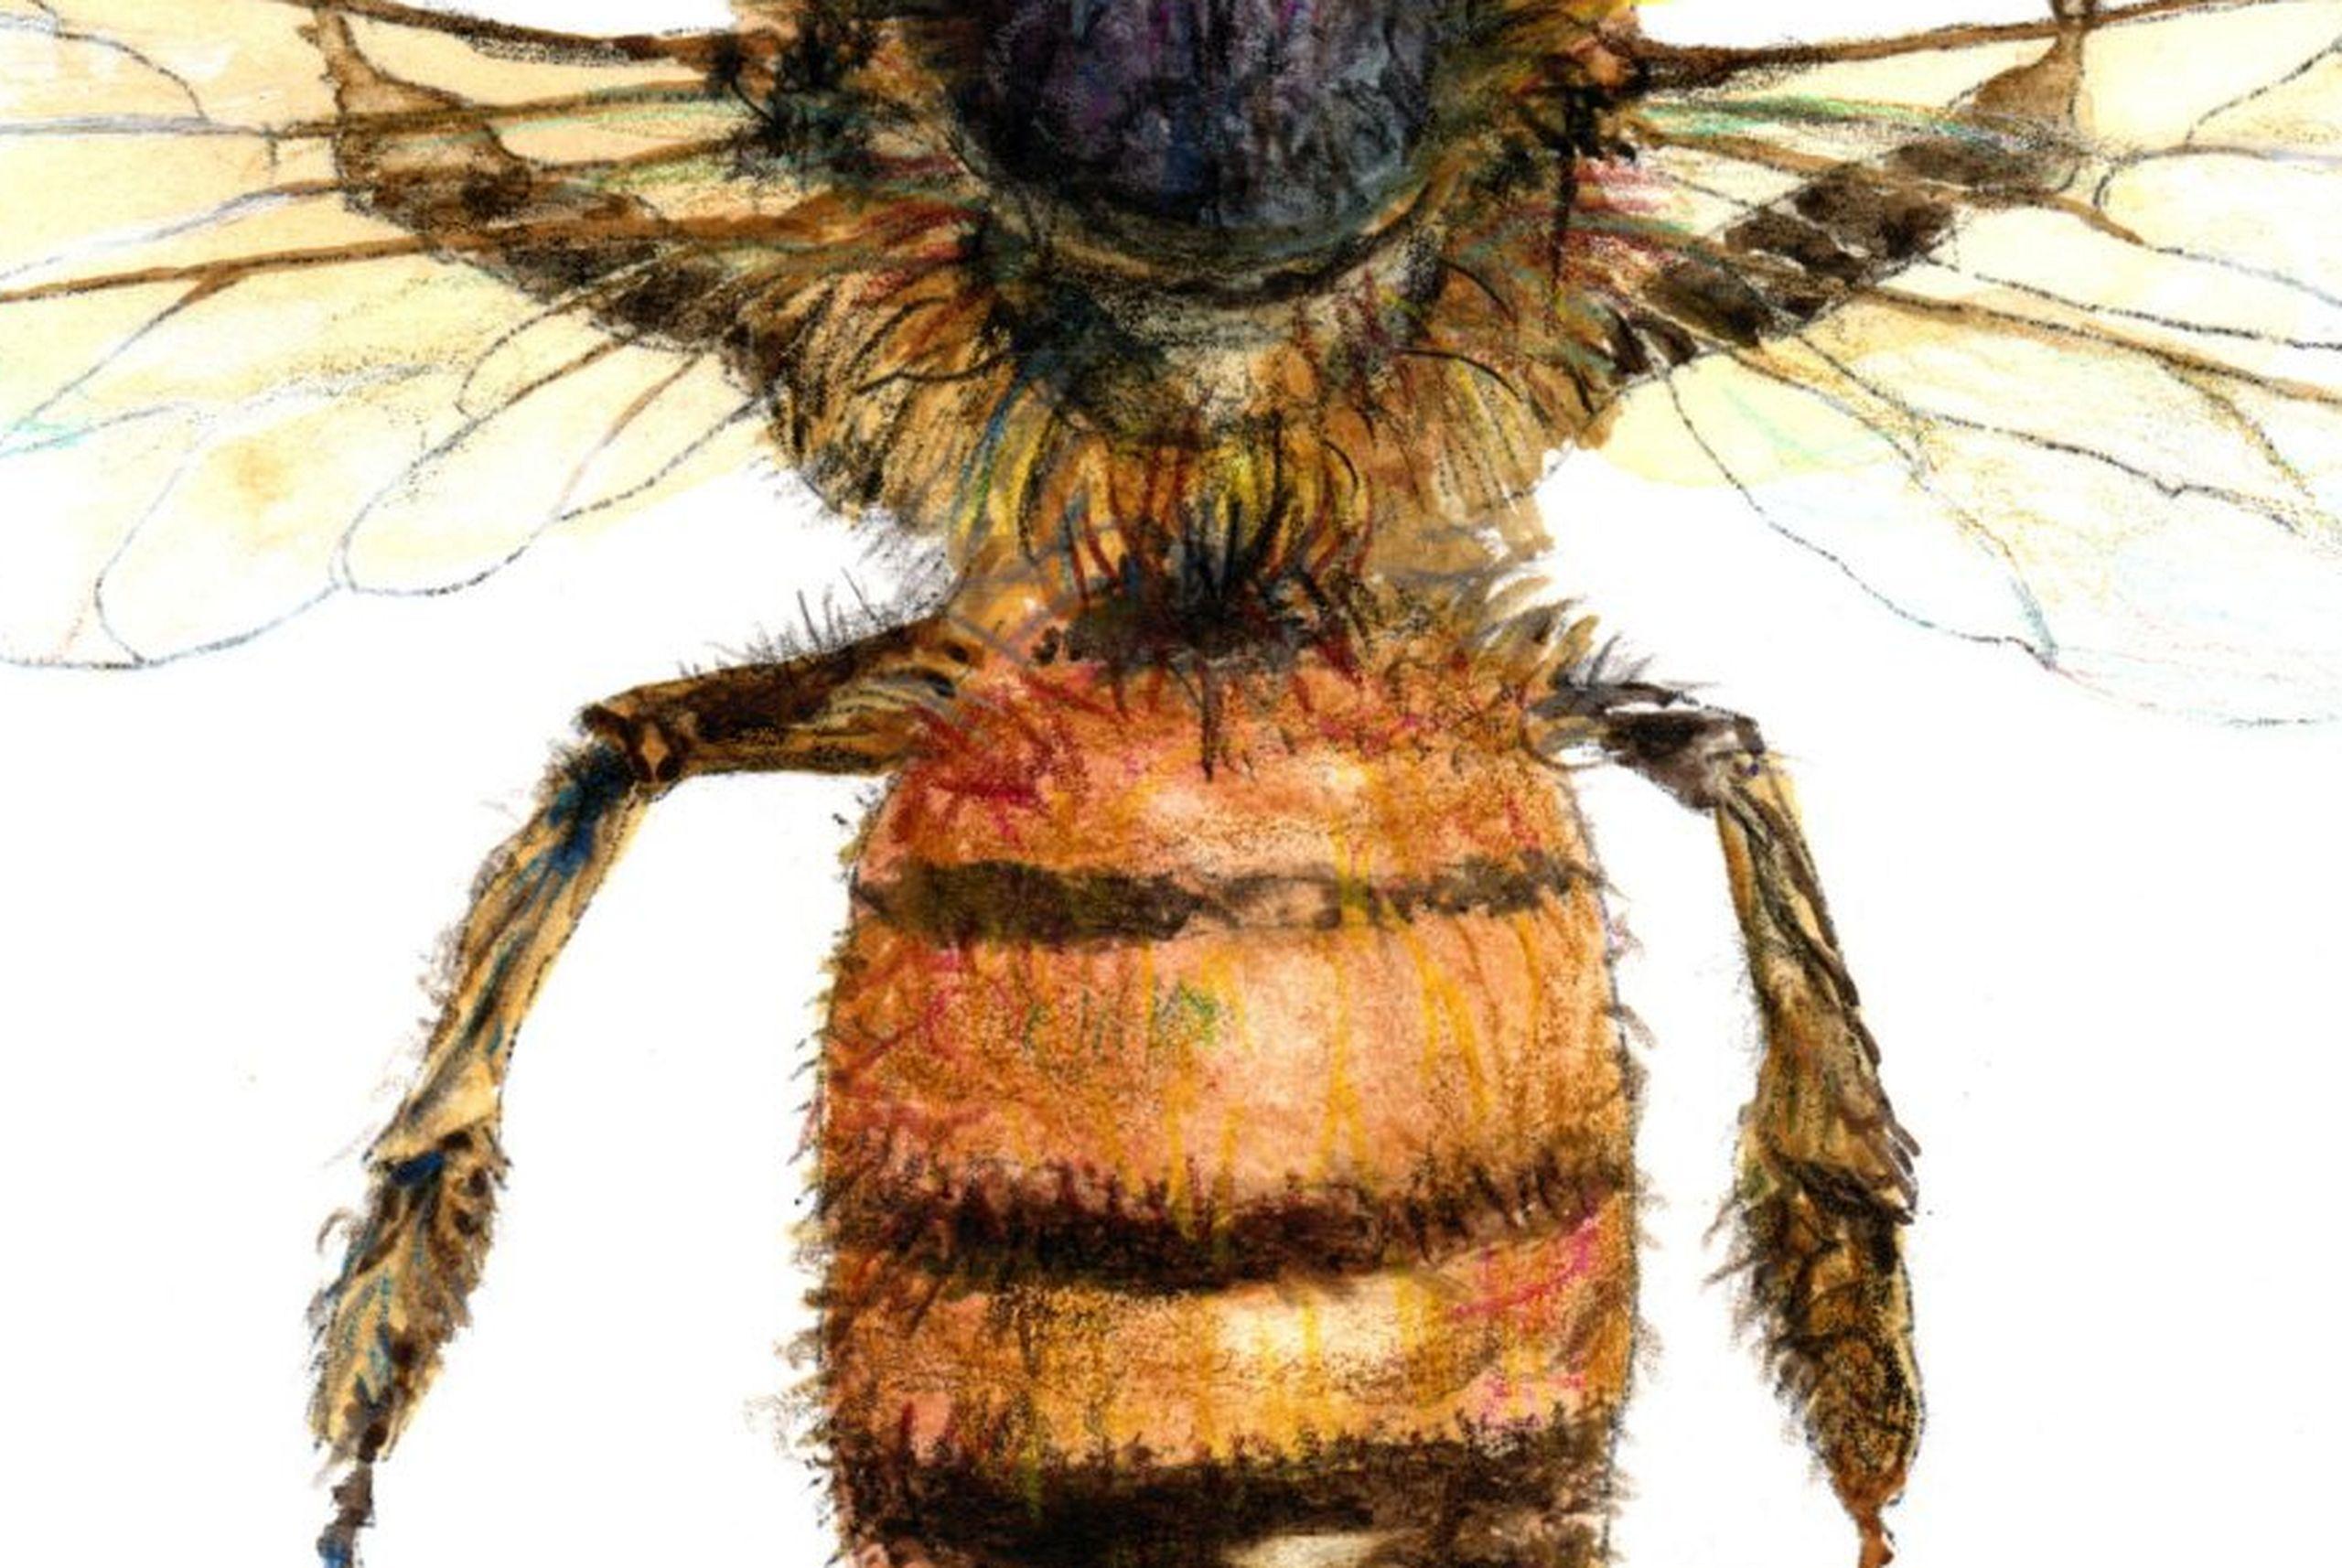 Die Biene von oben. Papier, Mischtechnik, 30x21 cm, Papier – Art von Juris Utans